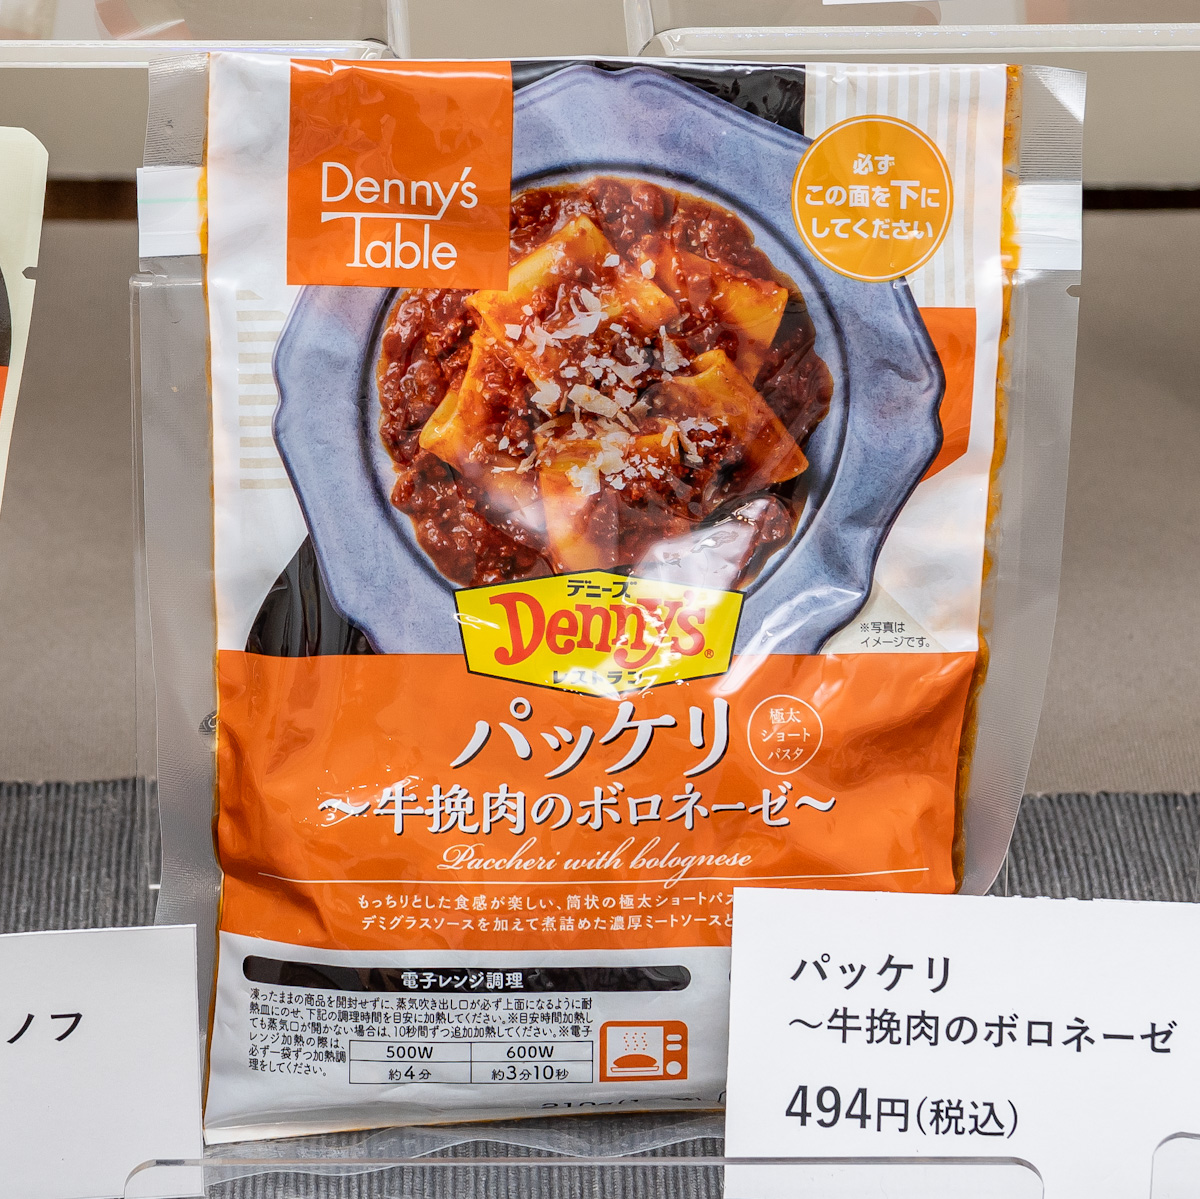 冷凍食品ブランド「Denny’s Table(デニーズテーブル)」パッケリ〜牛挽肉のボロネーゼ〜